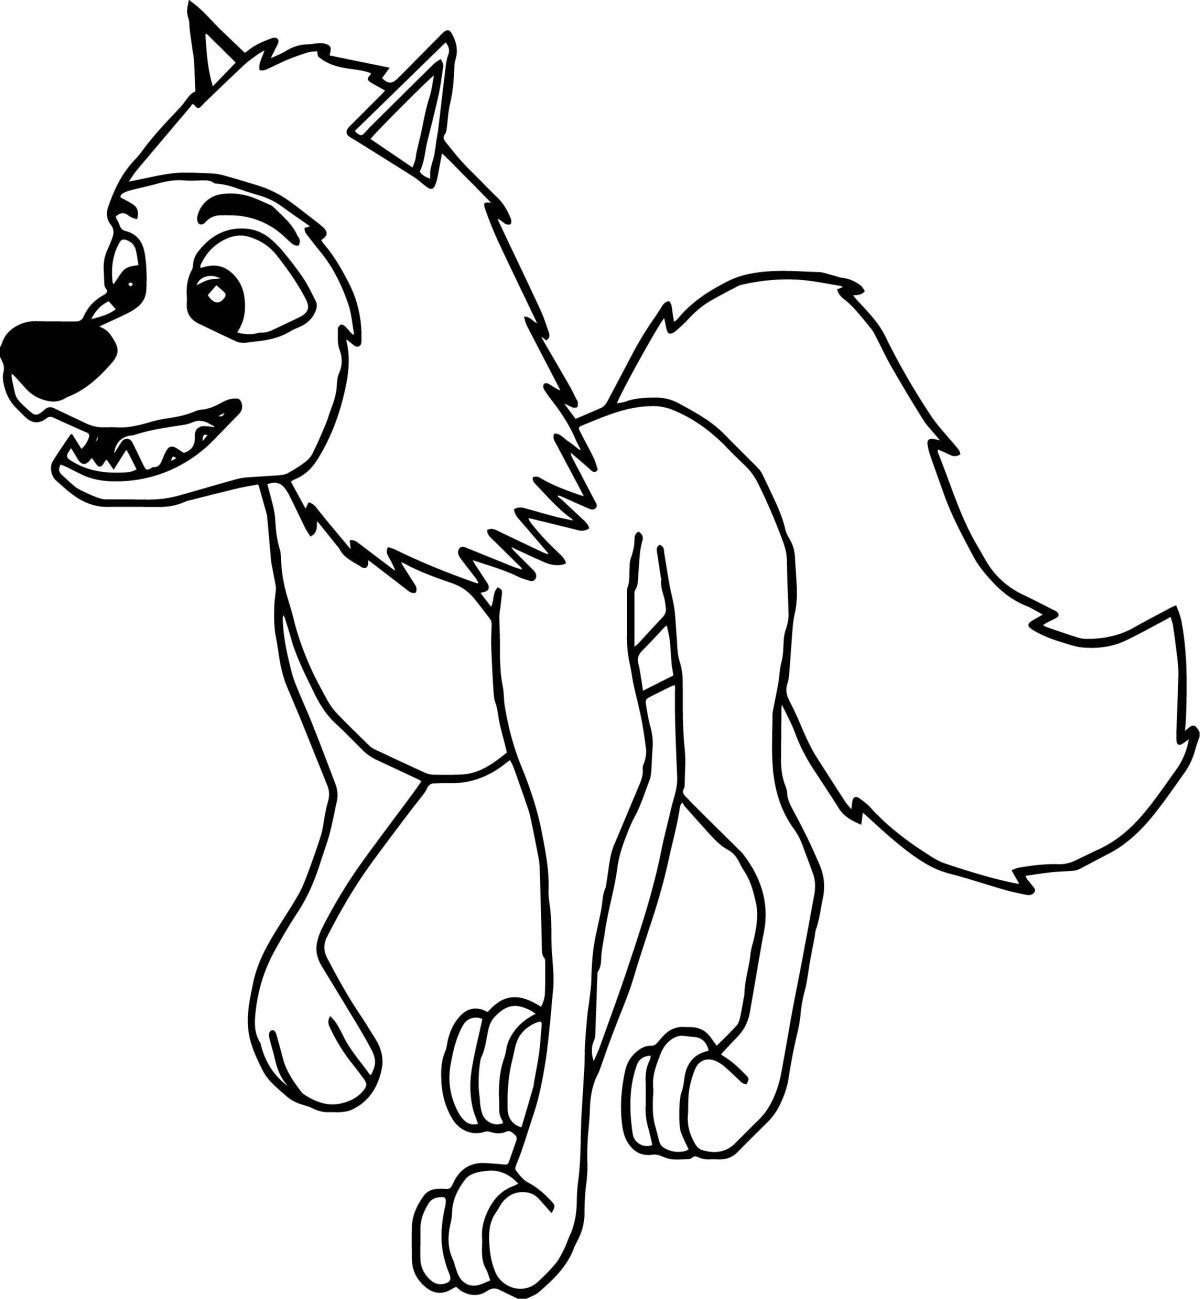 Волк рисунок из мультика